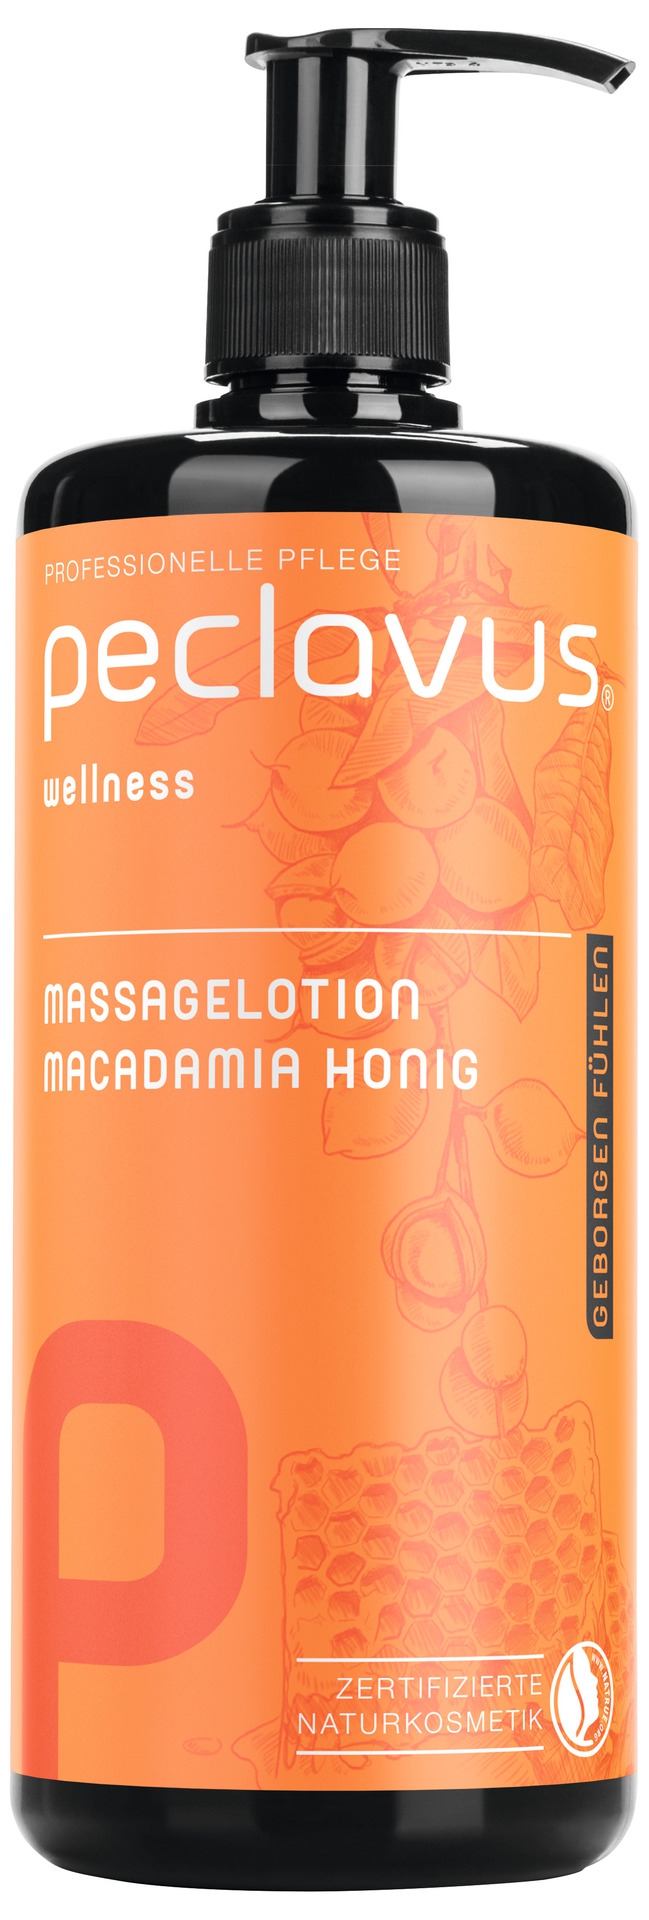 PECLAVUS Massagelotion Macadamia Honig 500 ml | Geborgen fühlen